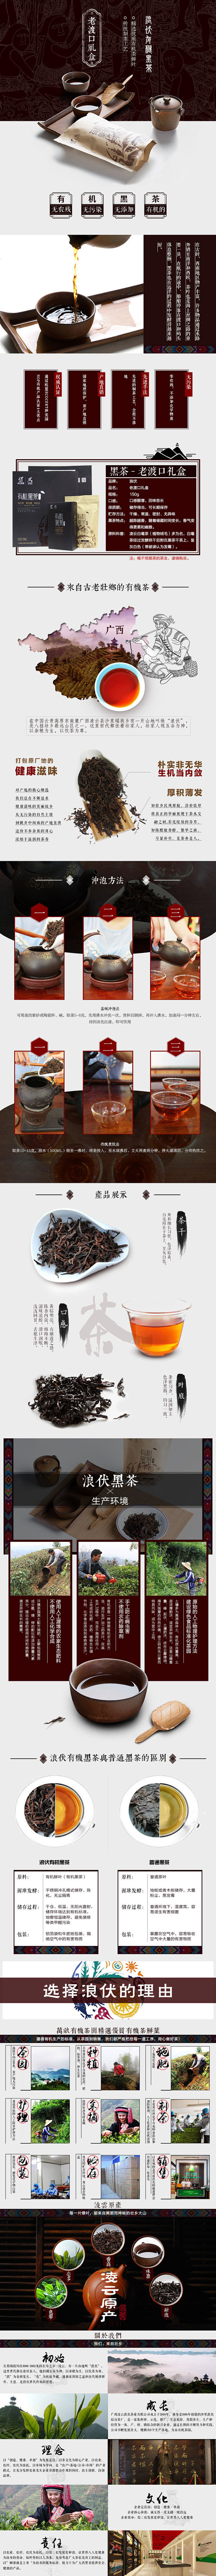 广西黑茶详情页